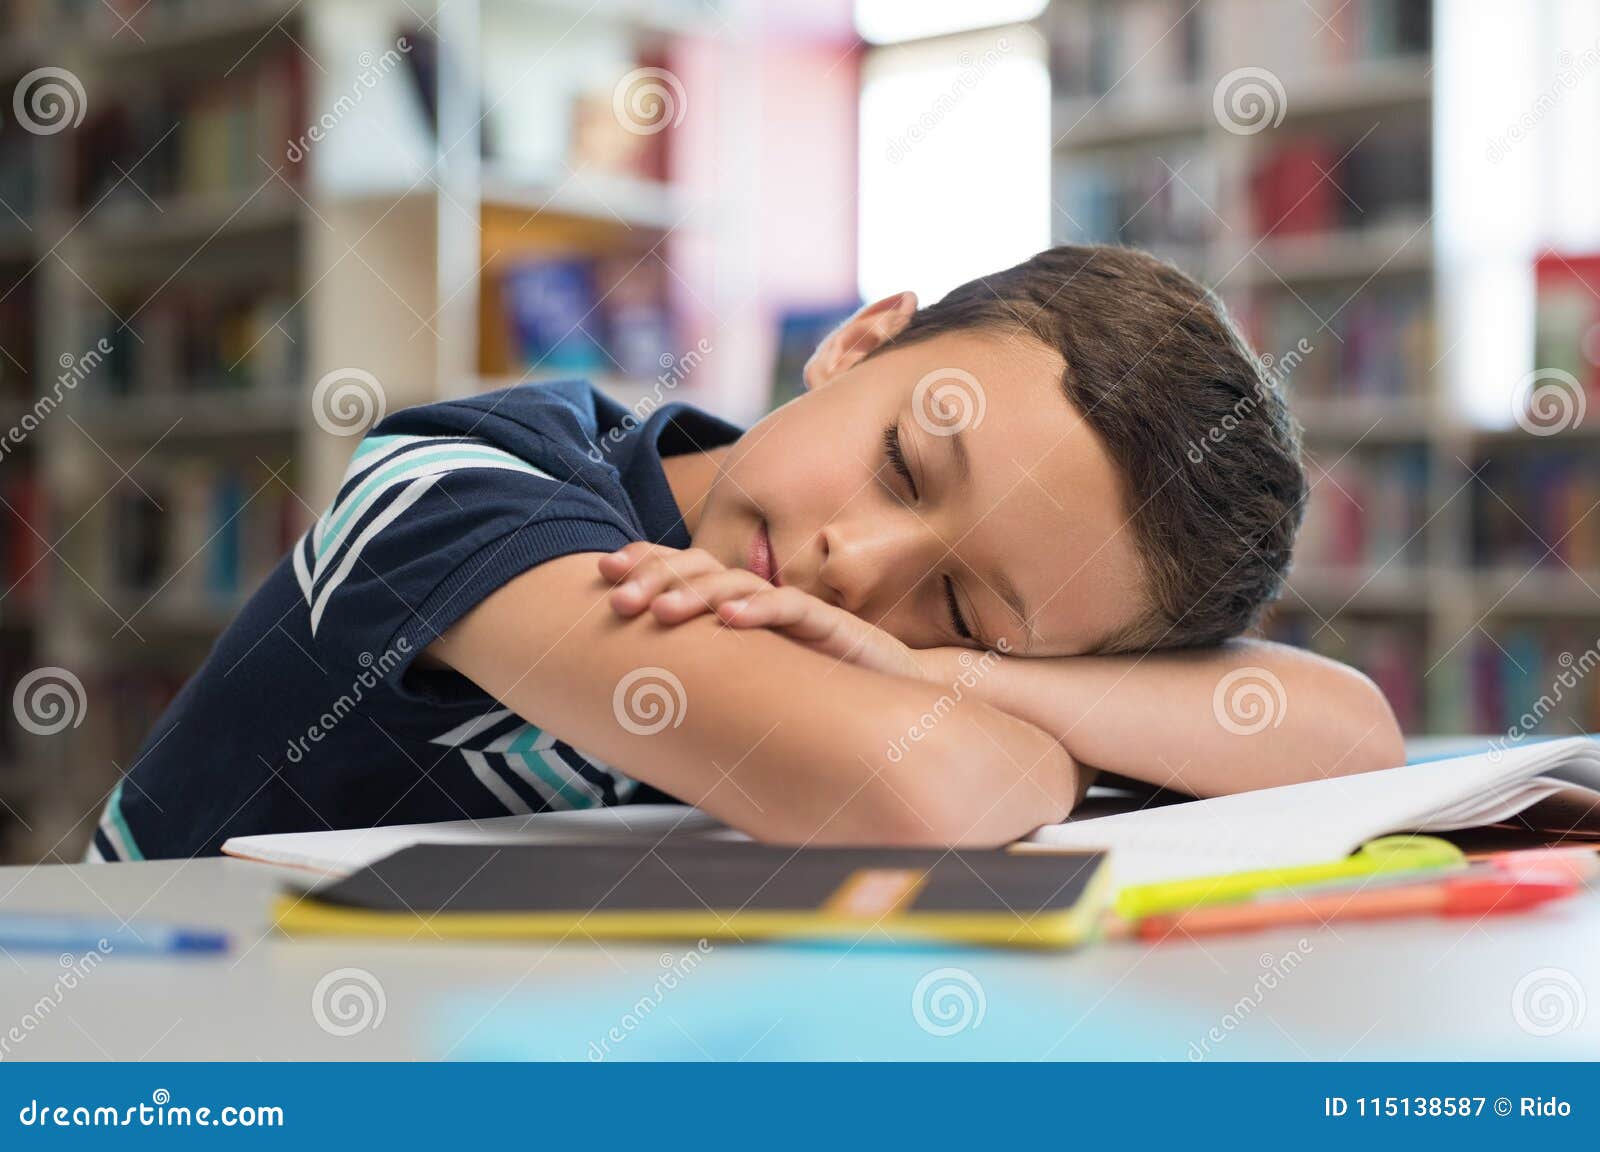 School Boy Sleeping On Books Stock Image Image Of Schoolboy